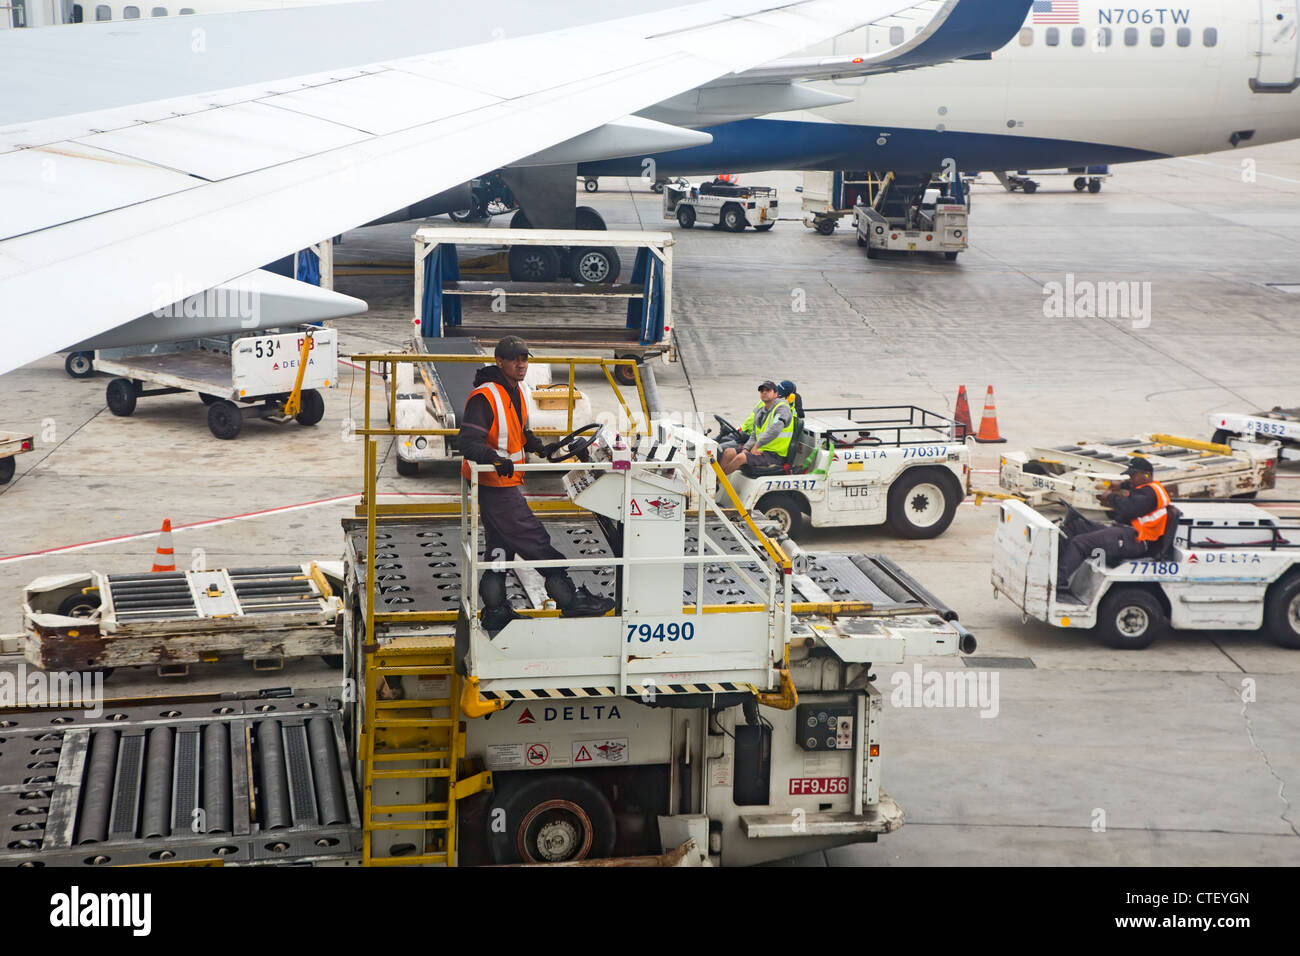 Gepäckabfertiger und andere Boden-Crew-Mitglieder warten auf die Ankunft eines Delta Airlines Jets am Los Angeles International Airport. Stockfoto